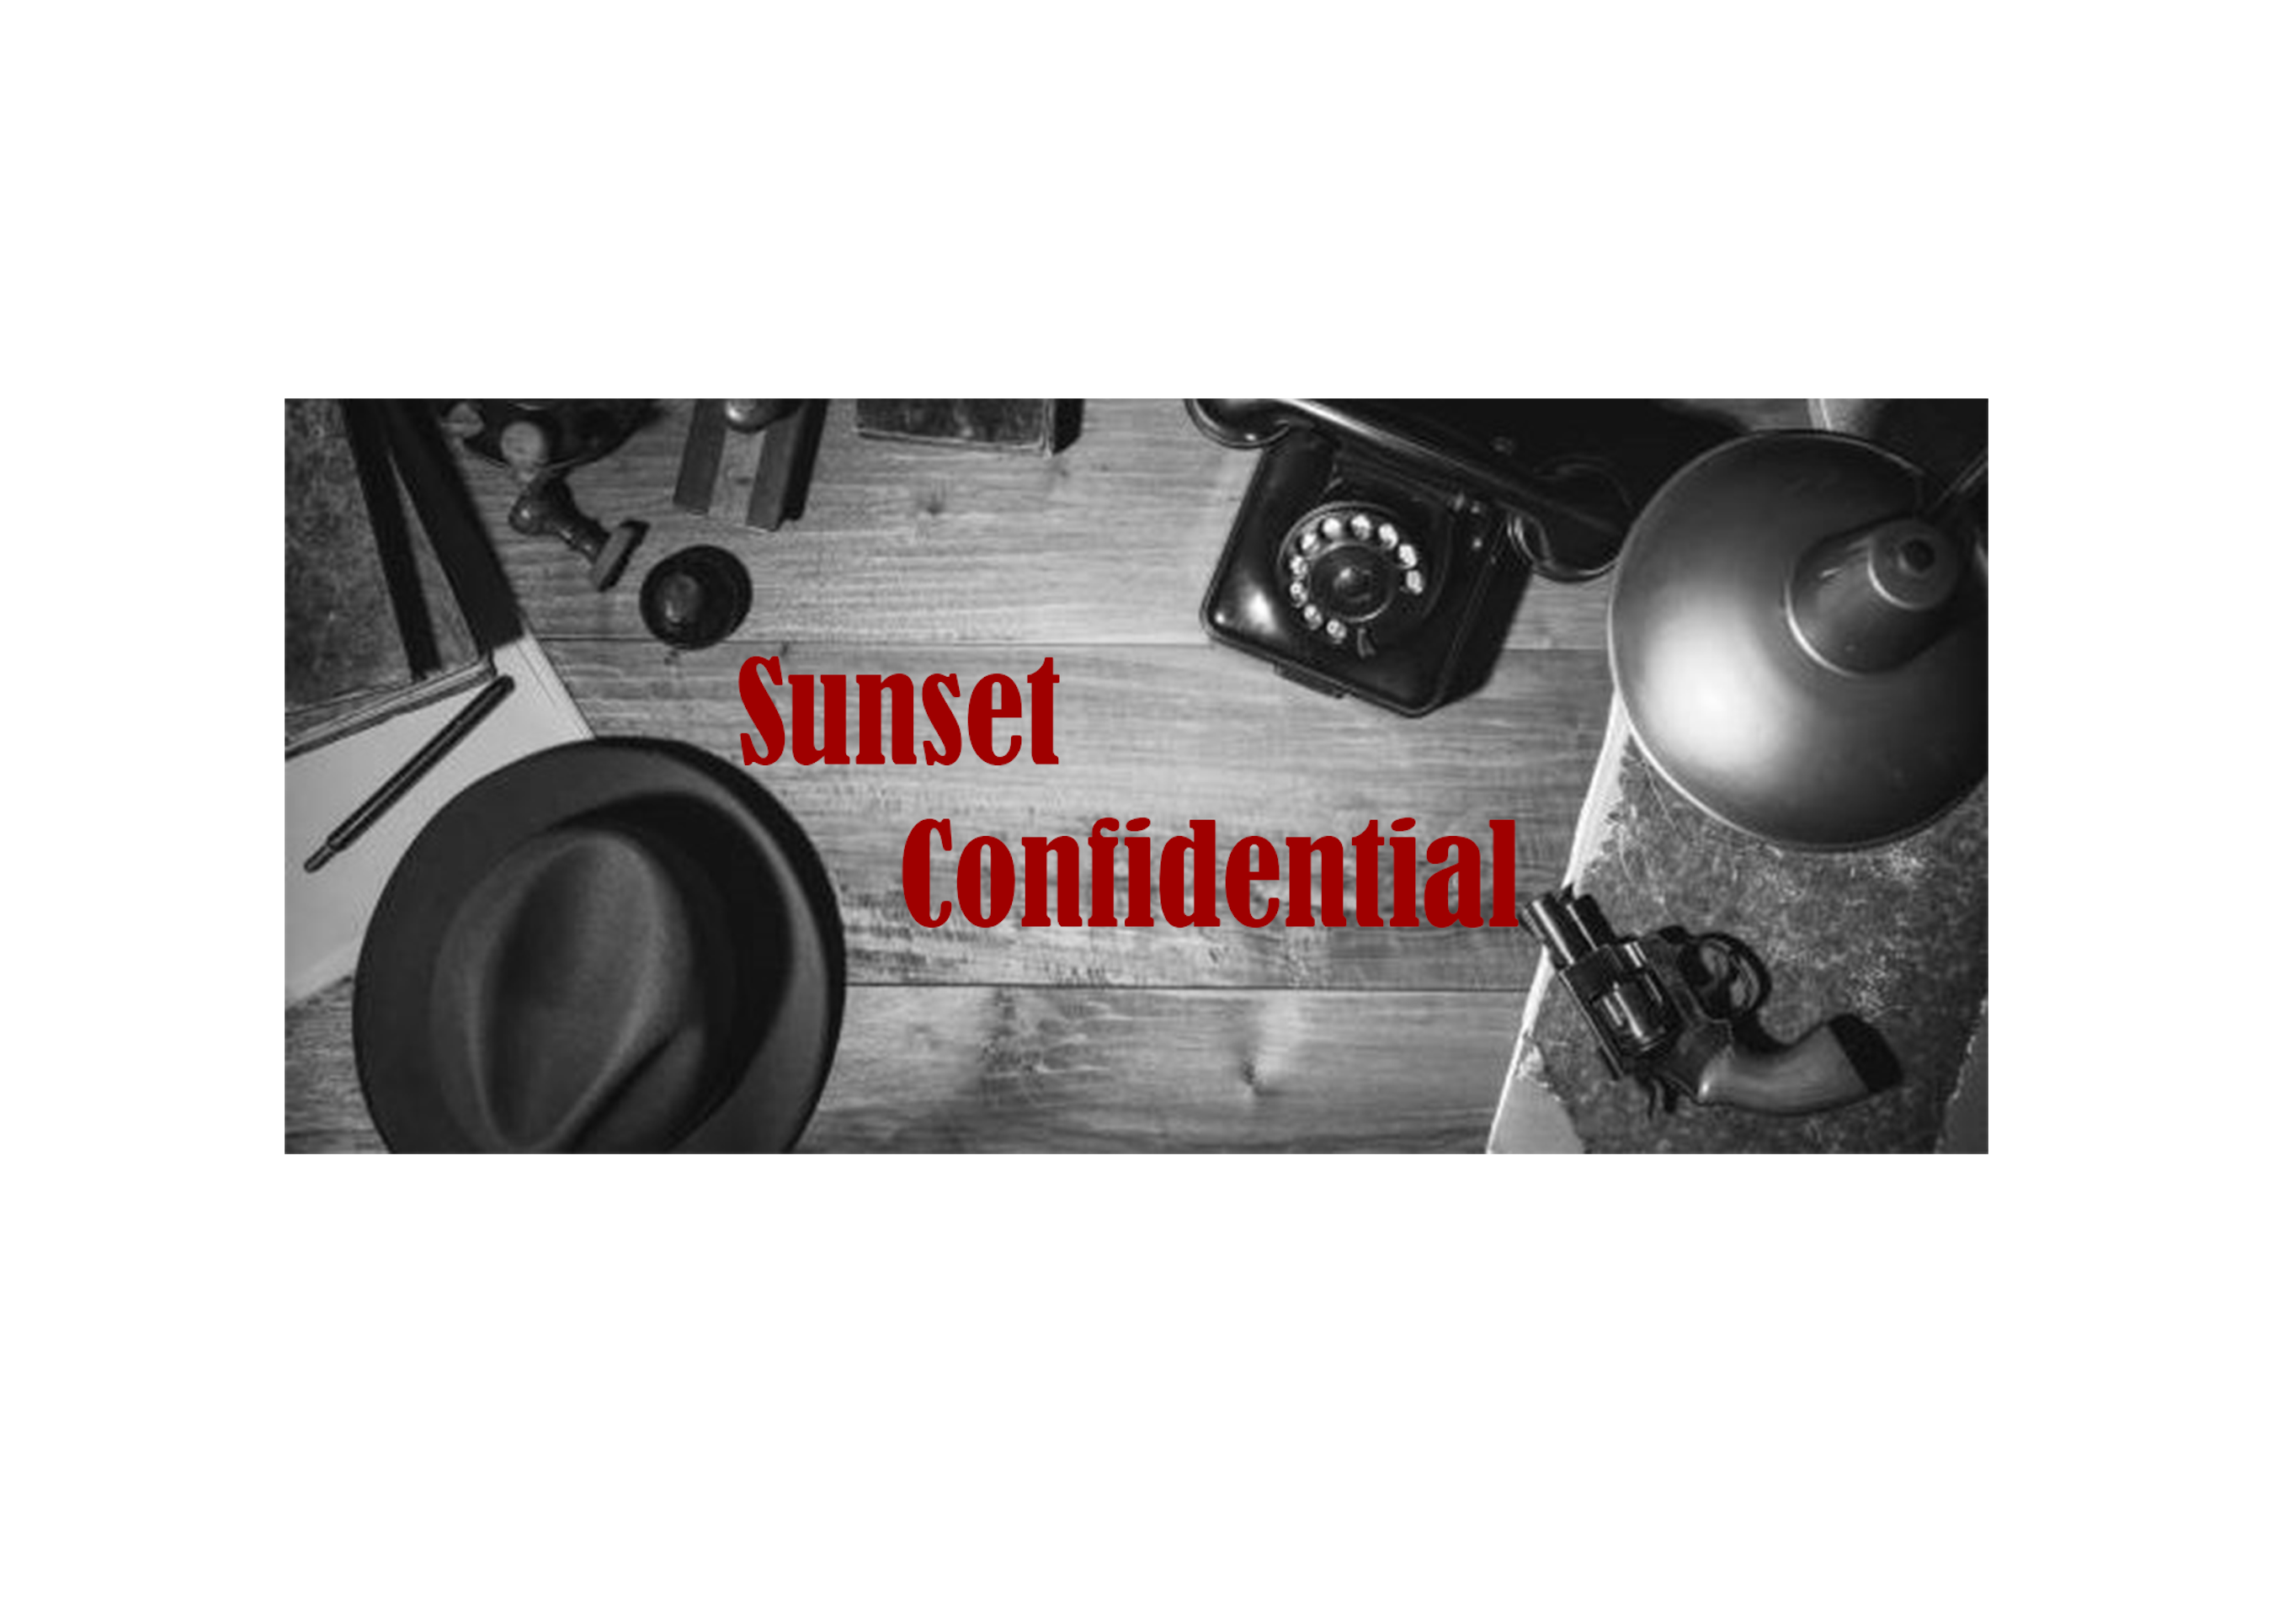 Sunset Confidential